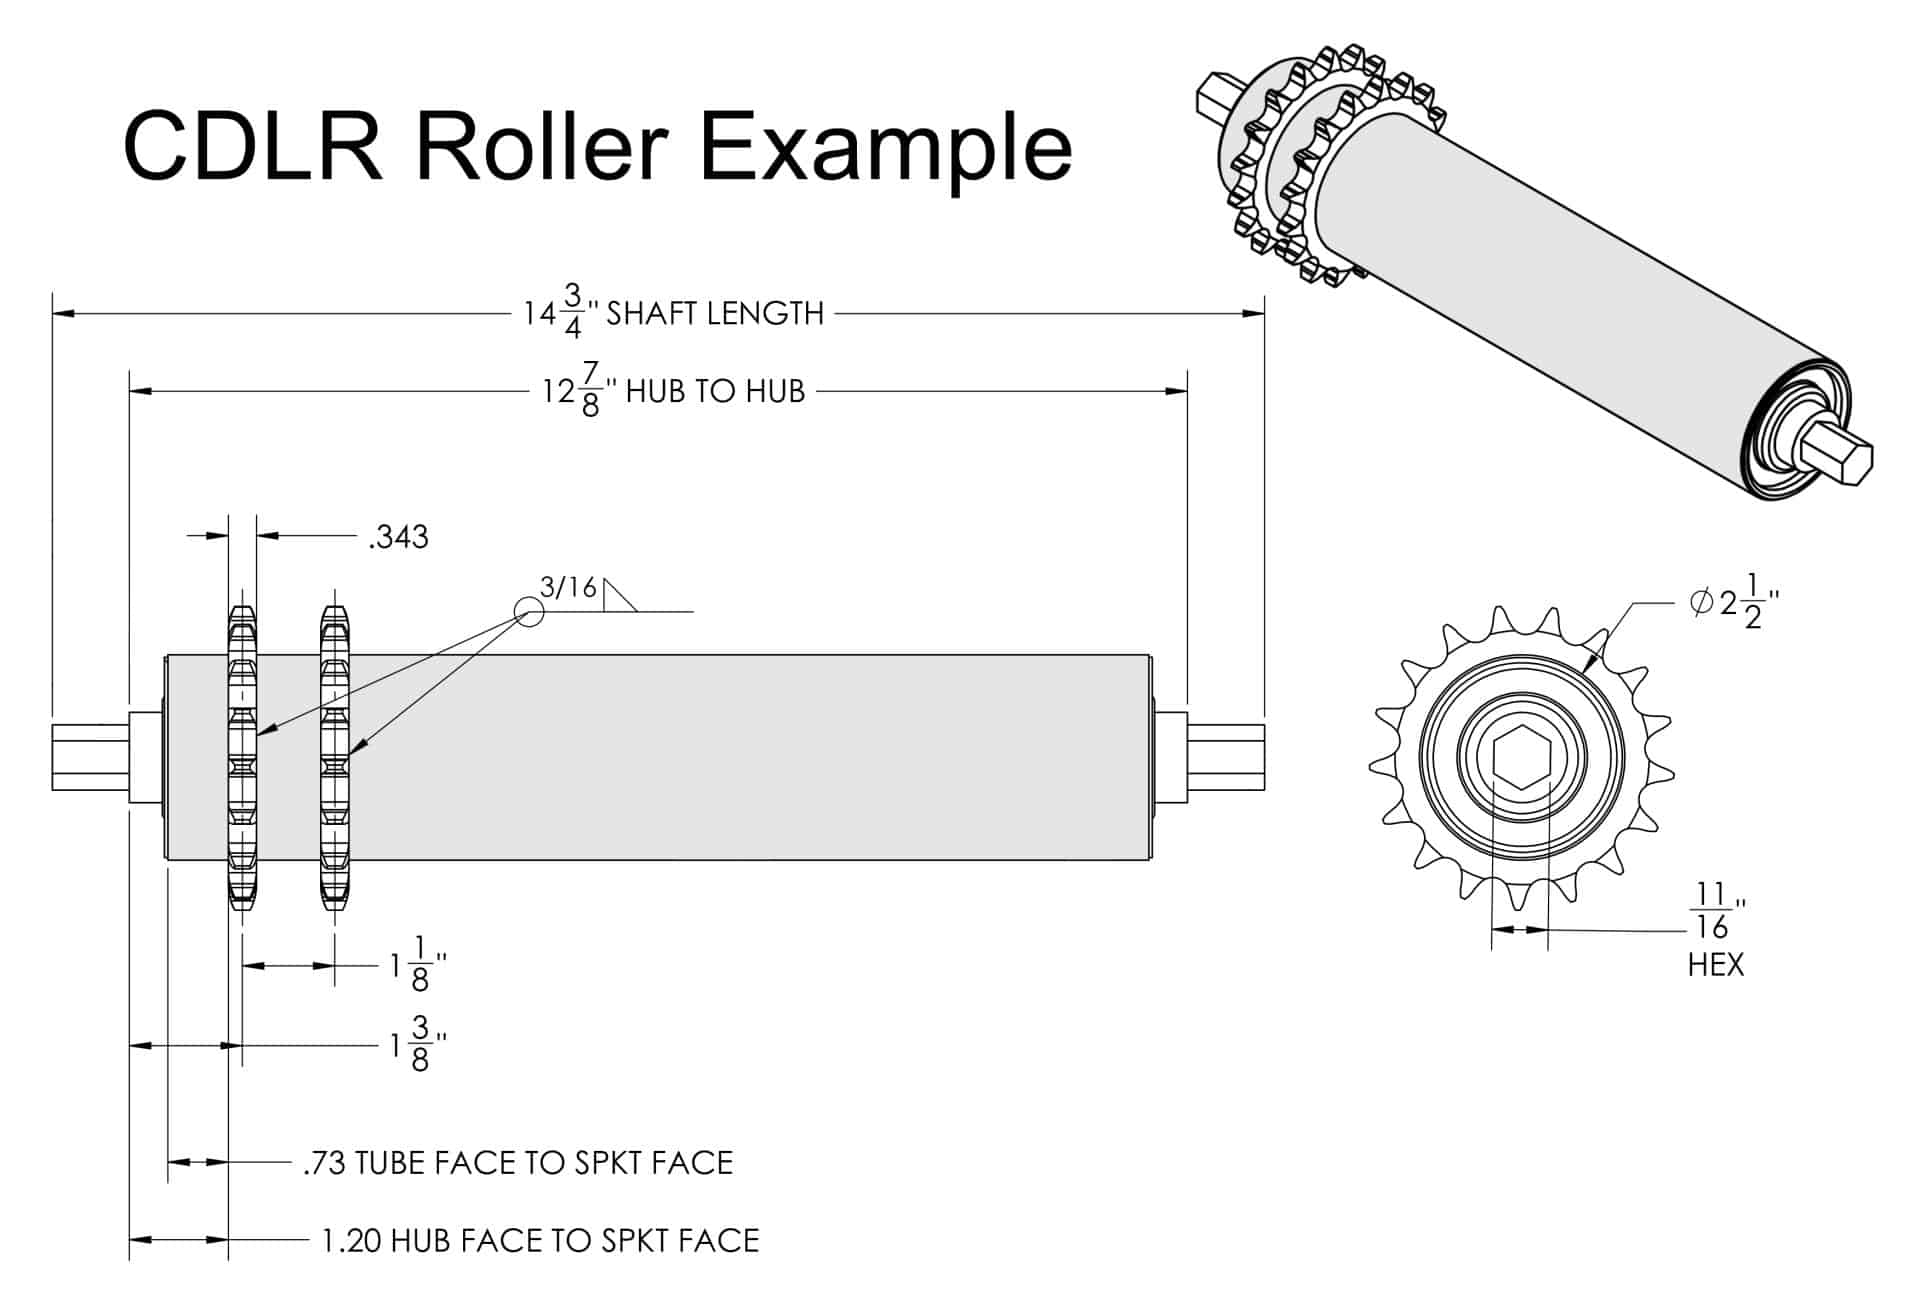 CDLR Roller Schematic